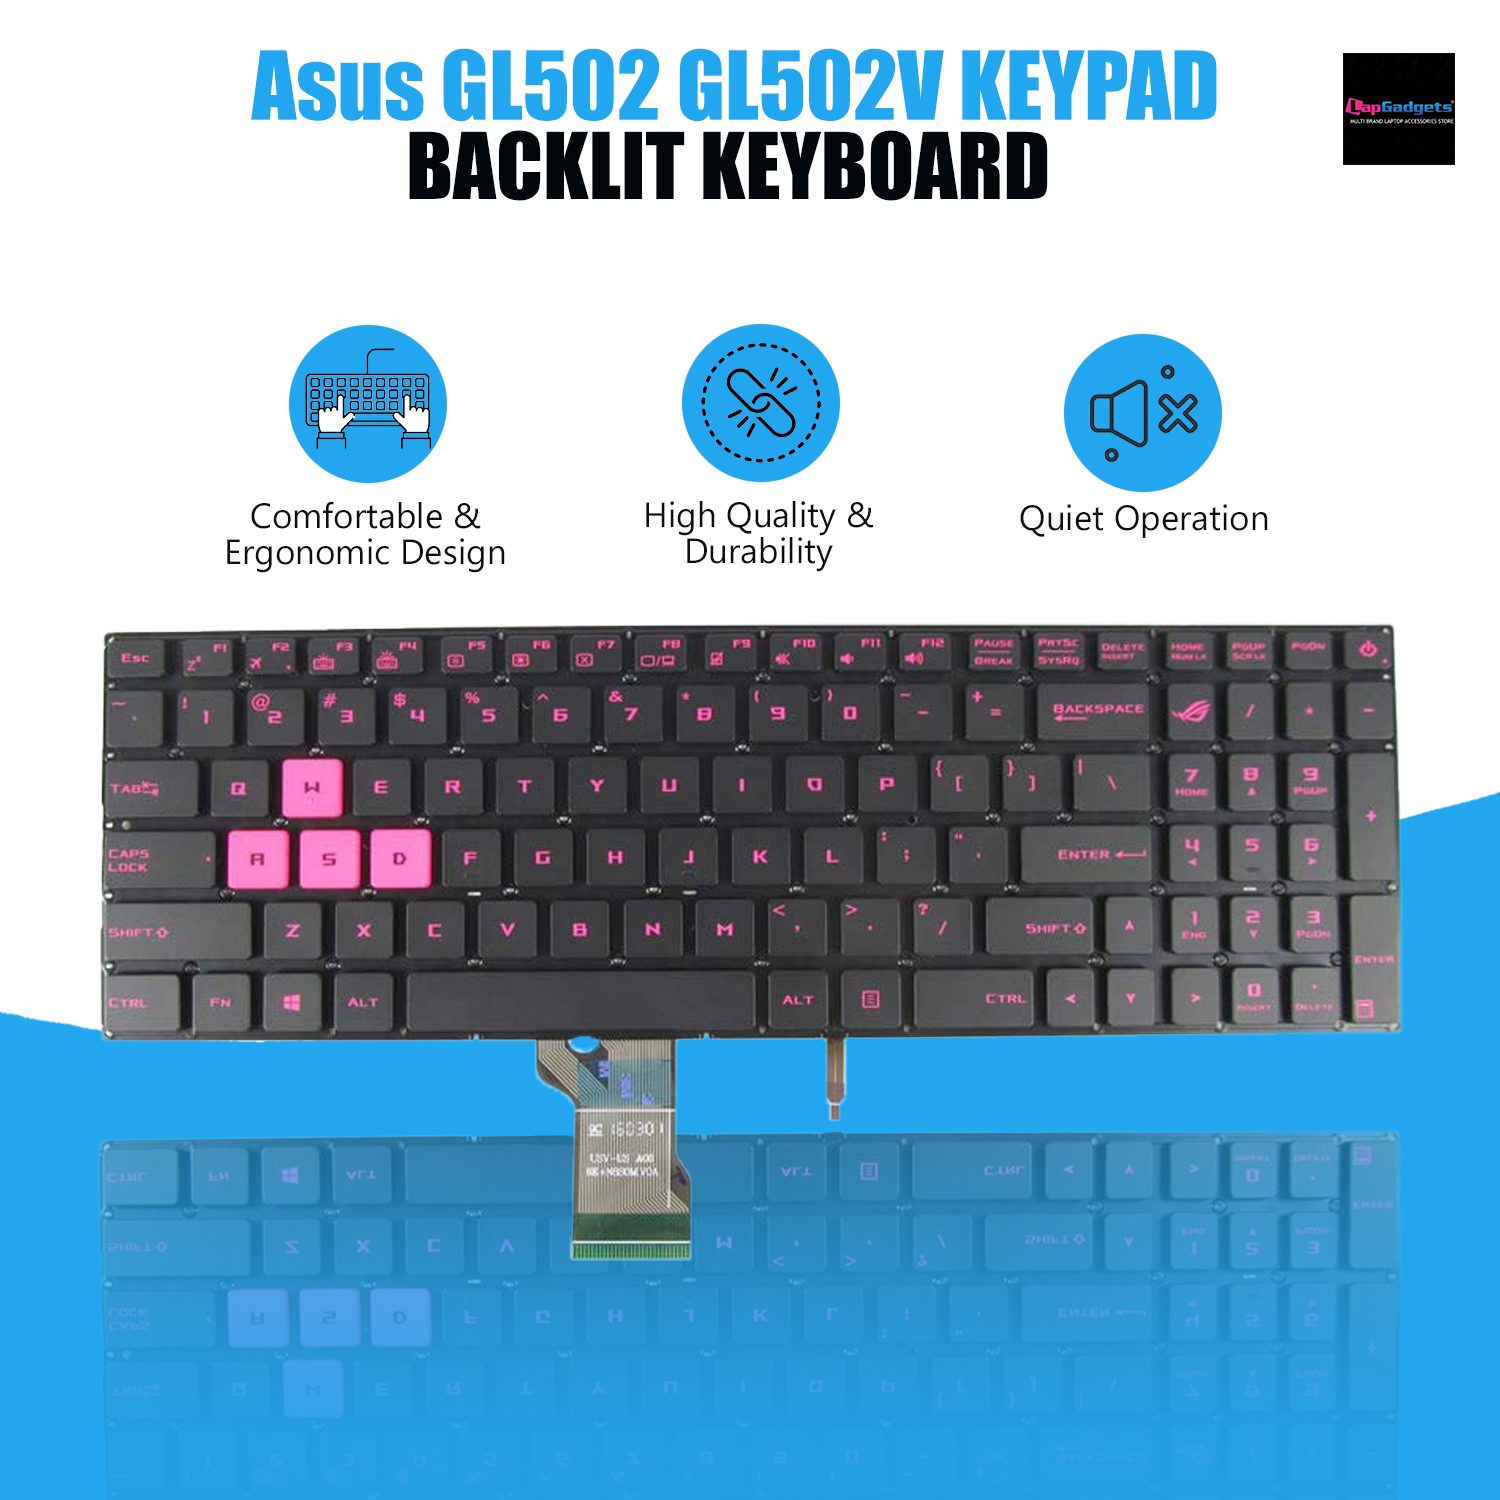 Asus 15-Inch Laptop Keyboards GL502, GL502V, GL502VM, GL502VT, GL502VY with Backlit Feature